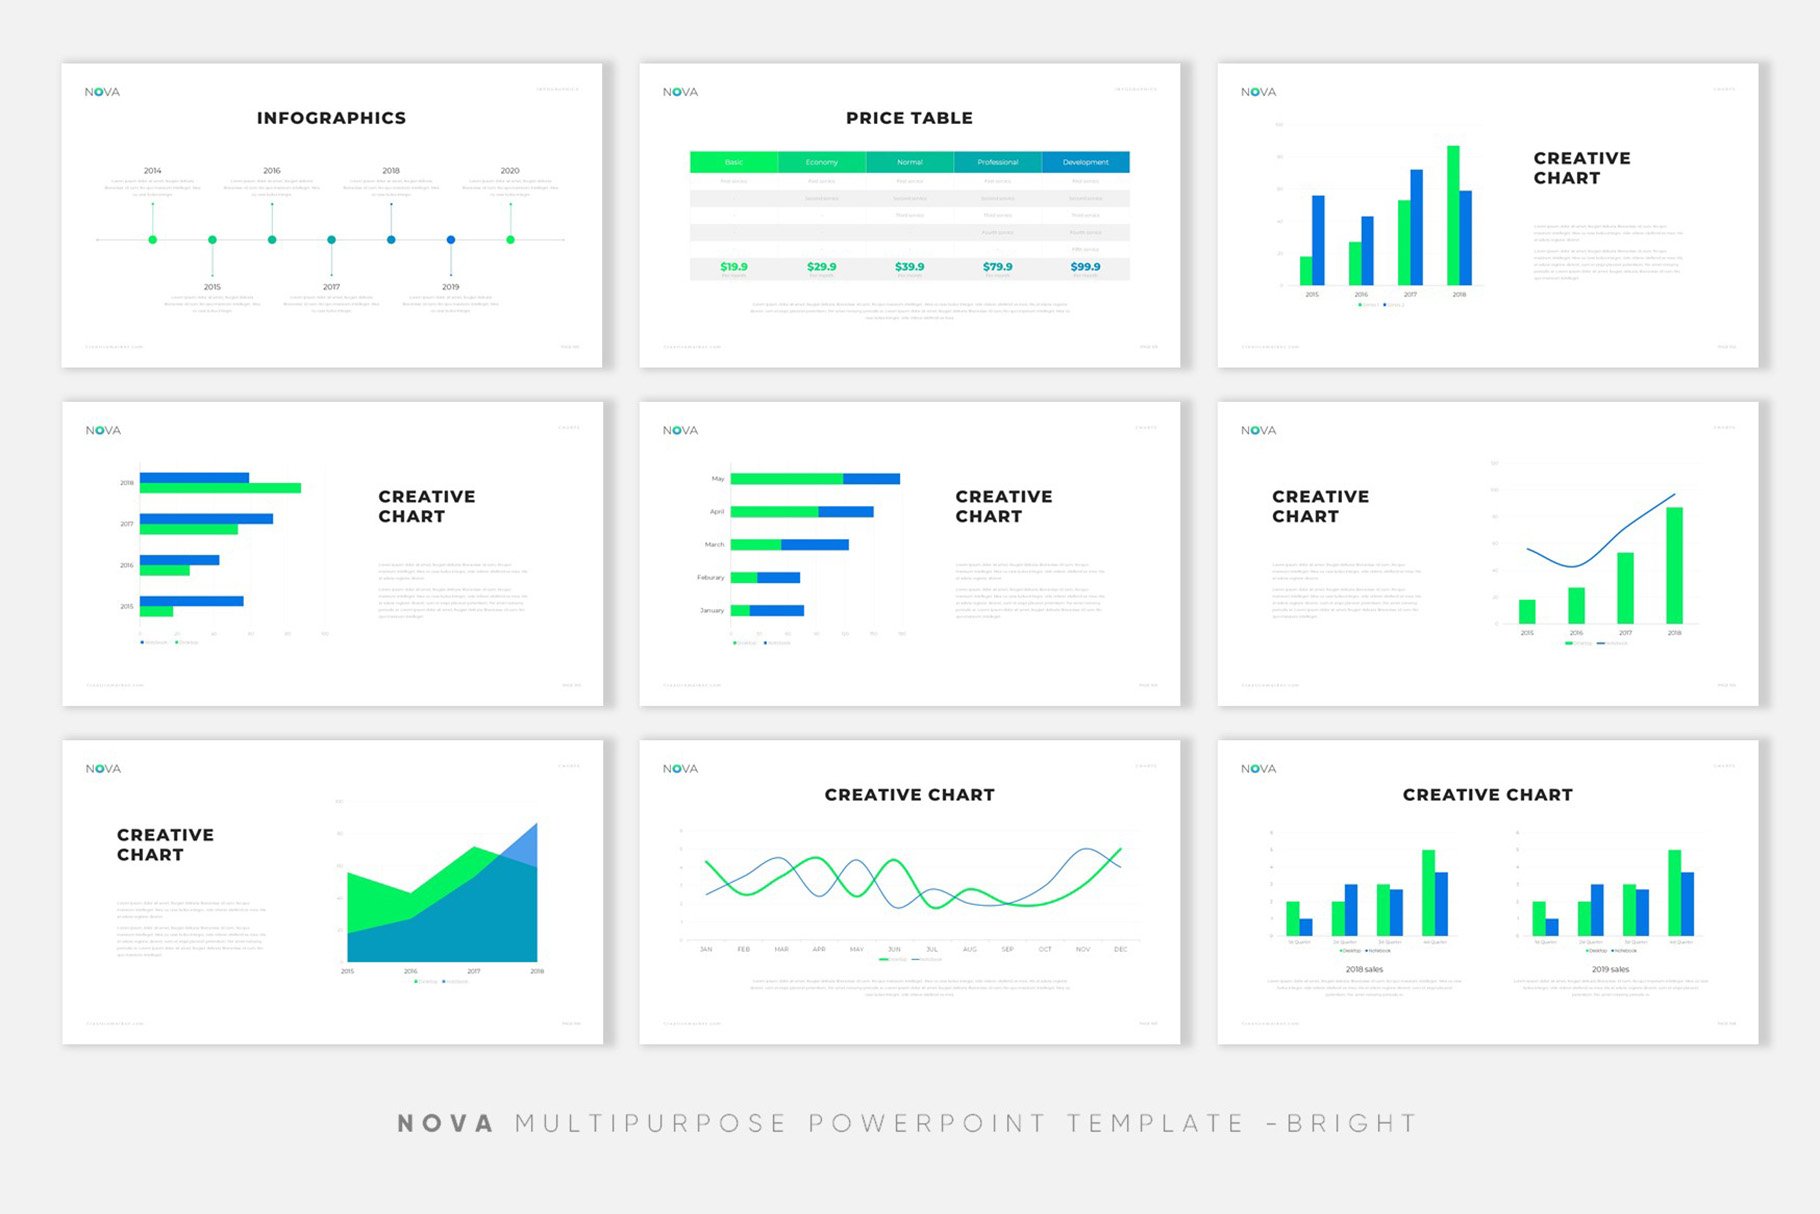 极简公司介绍项目业务策划PPT模板 NOVA Creative PowerPoint Template插图10